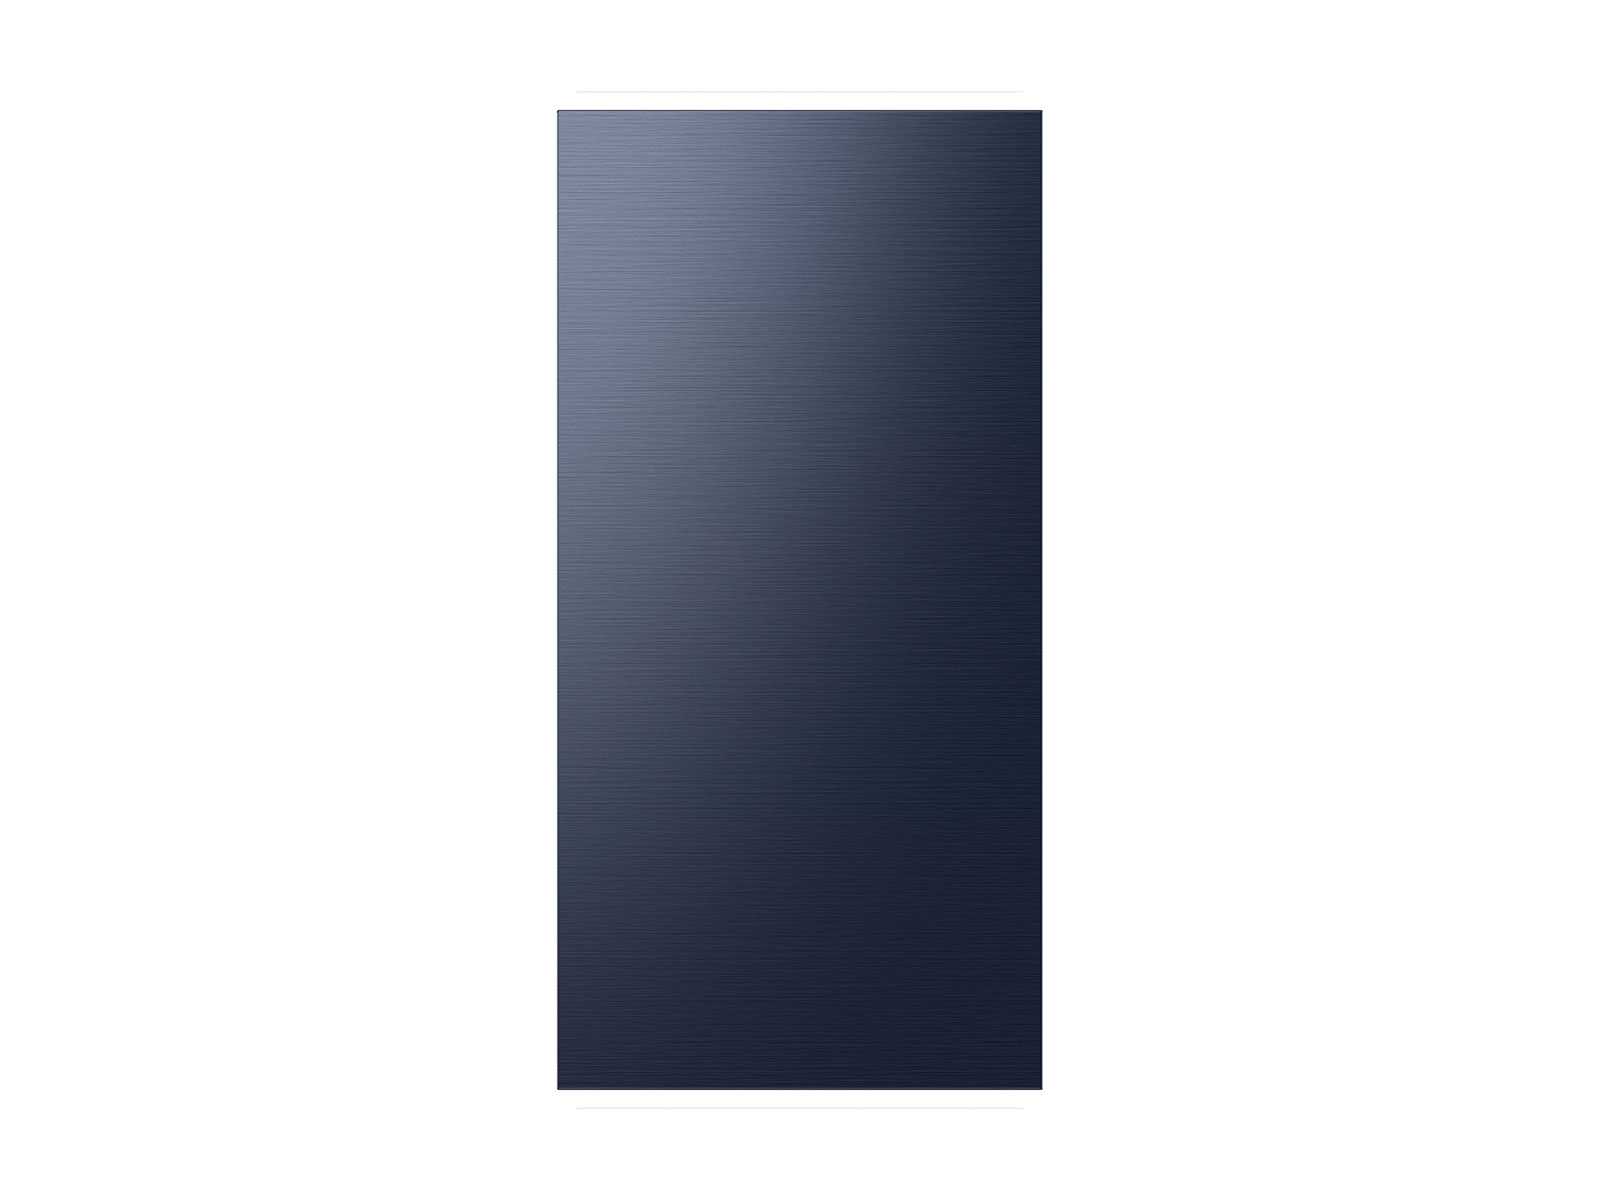 RAF18DUU41 by Samsung - BESPOKE 4-Door Flex™ Refrigerator Panel in Navy  Glass - Top Panel